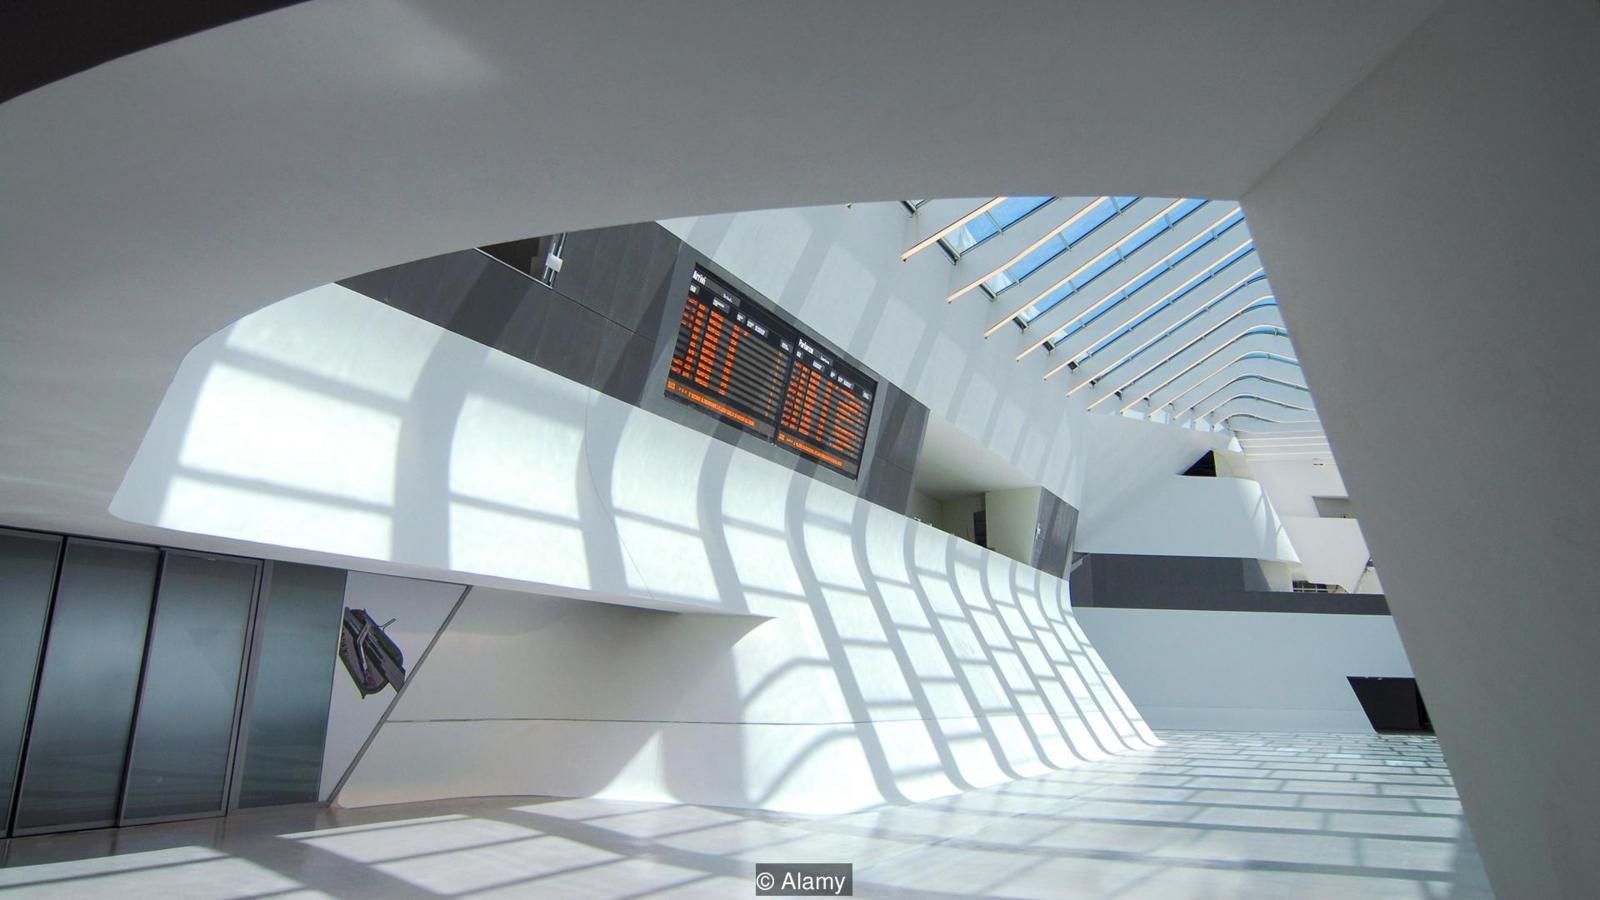 A Zaha Hadid tervezőstúdió által megálmodott nápolyi Afragola pályaudvar a természetes fényt magába engedő, tágas tereivel szintén egy modern építészeti műremek